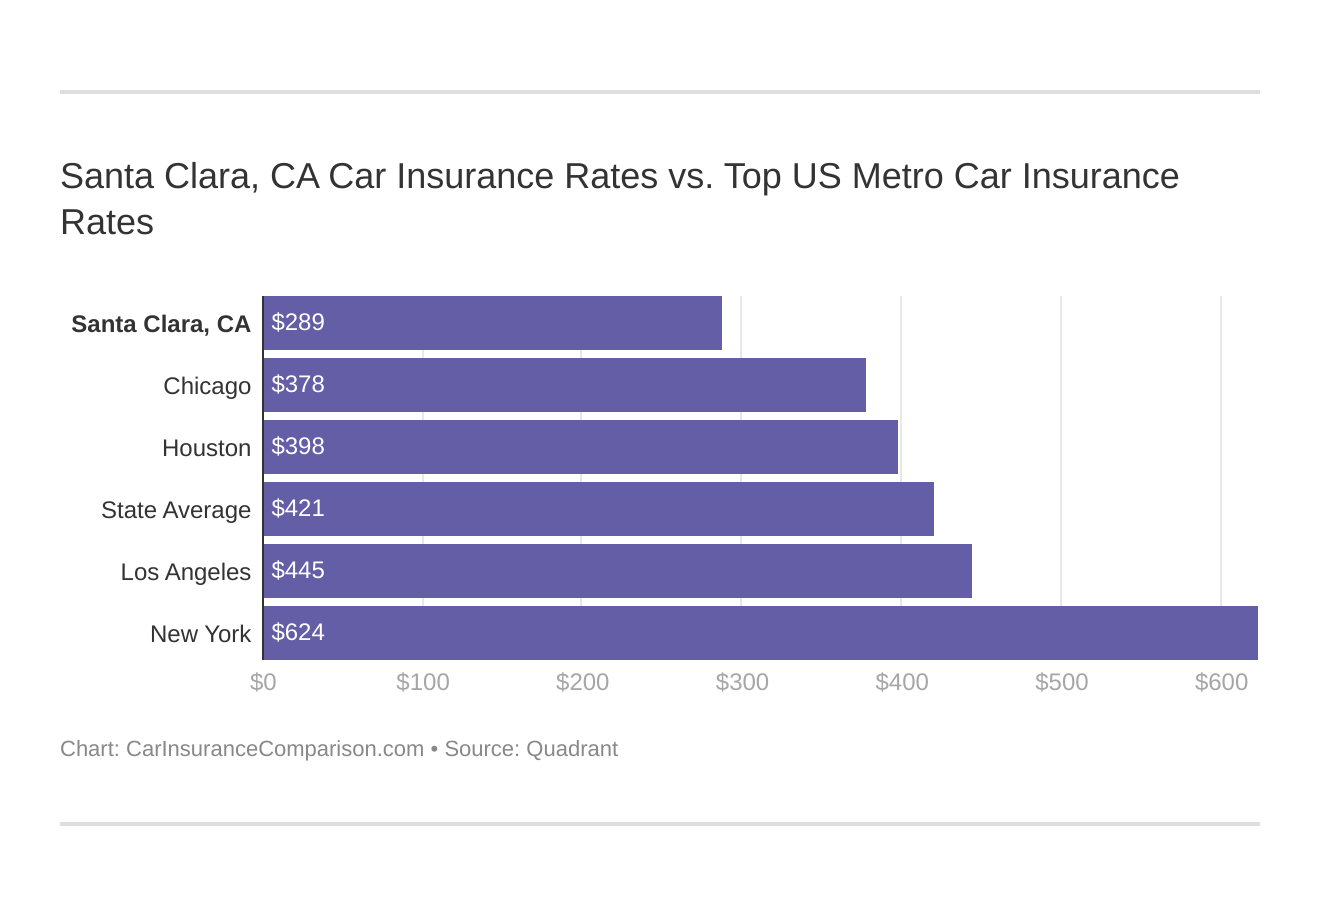 Santa Clara, CA Car Insurance Rates vs. Top US Metro Car Insurance Rates